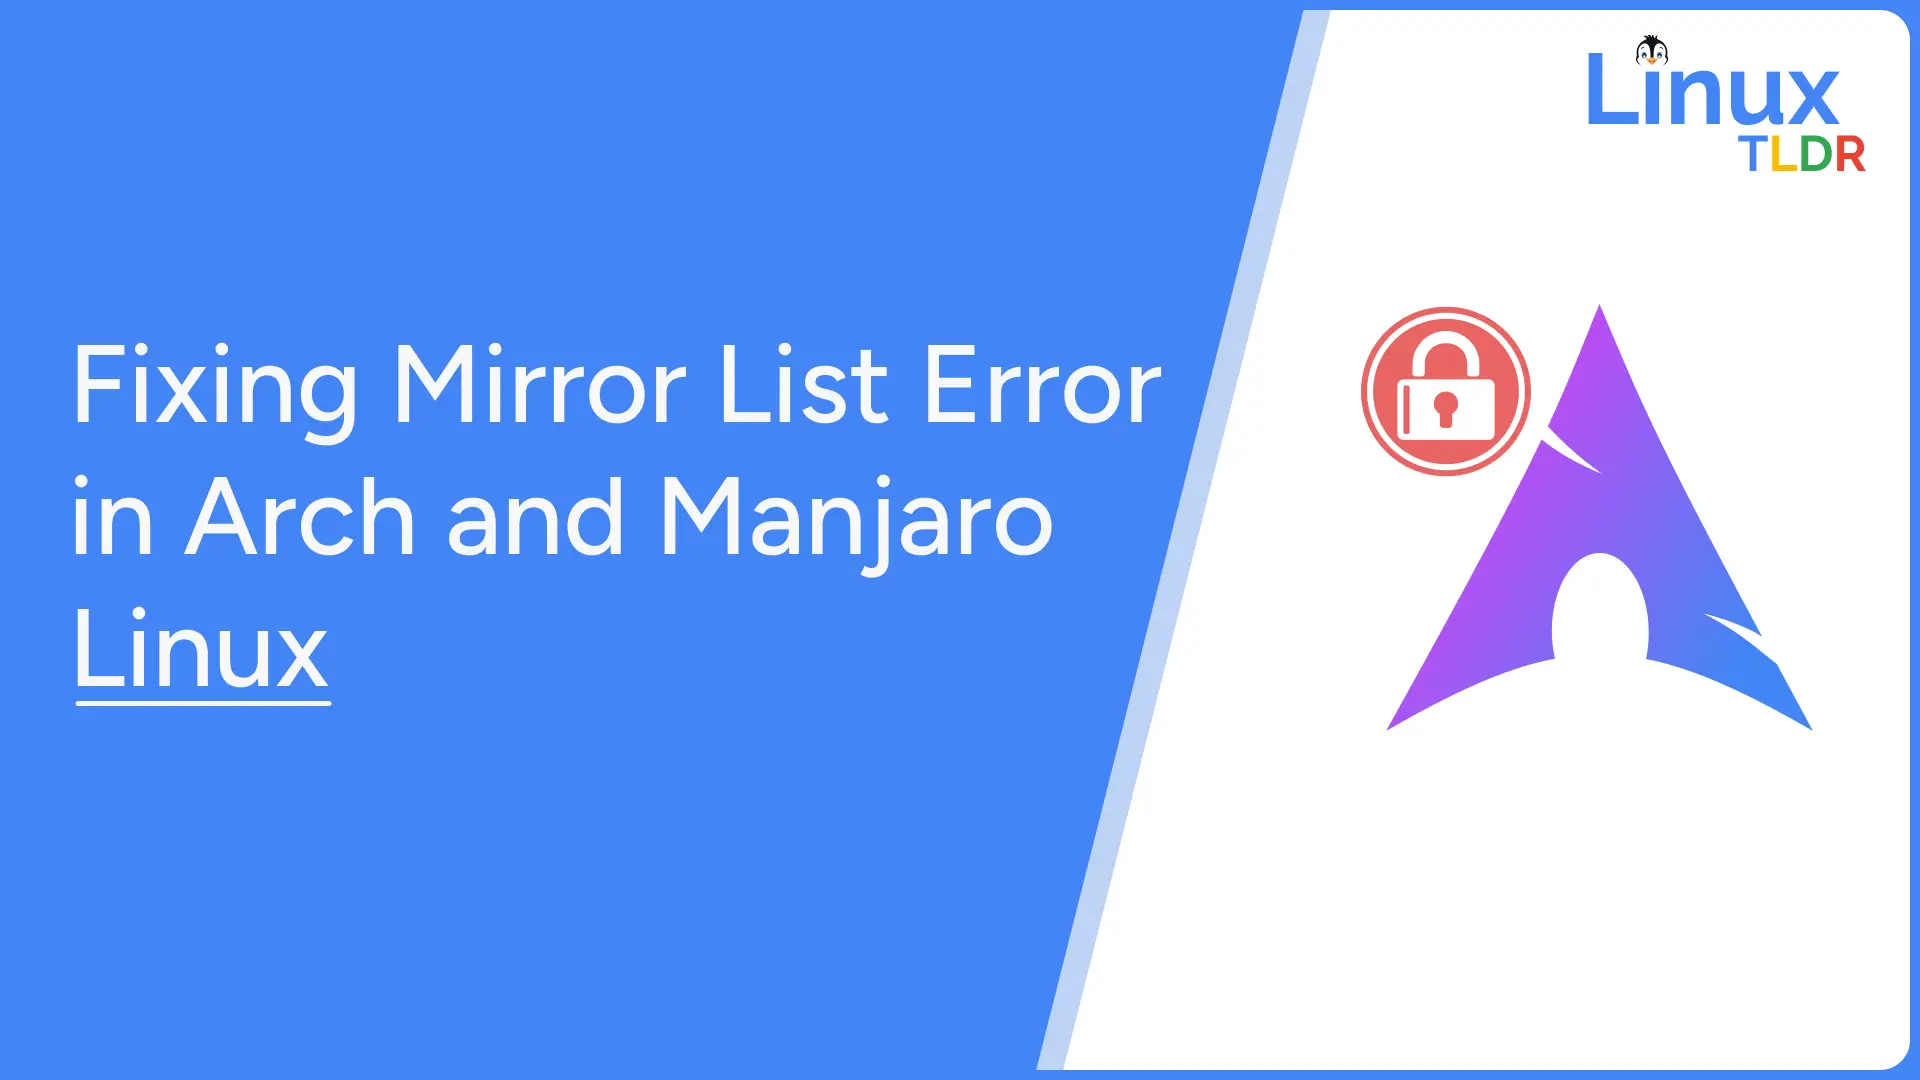 mirror list error in arch